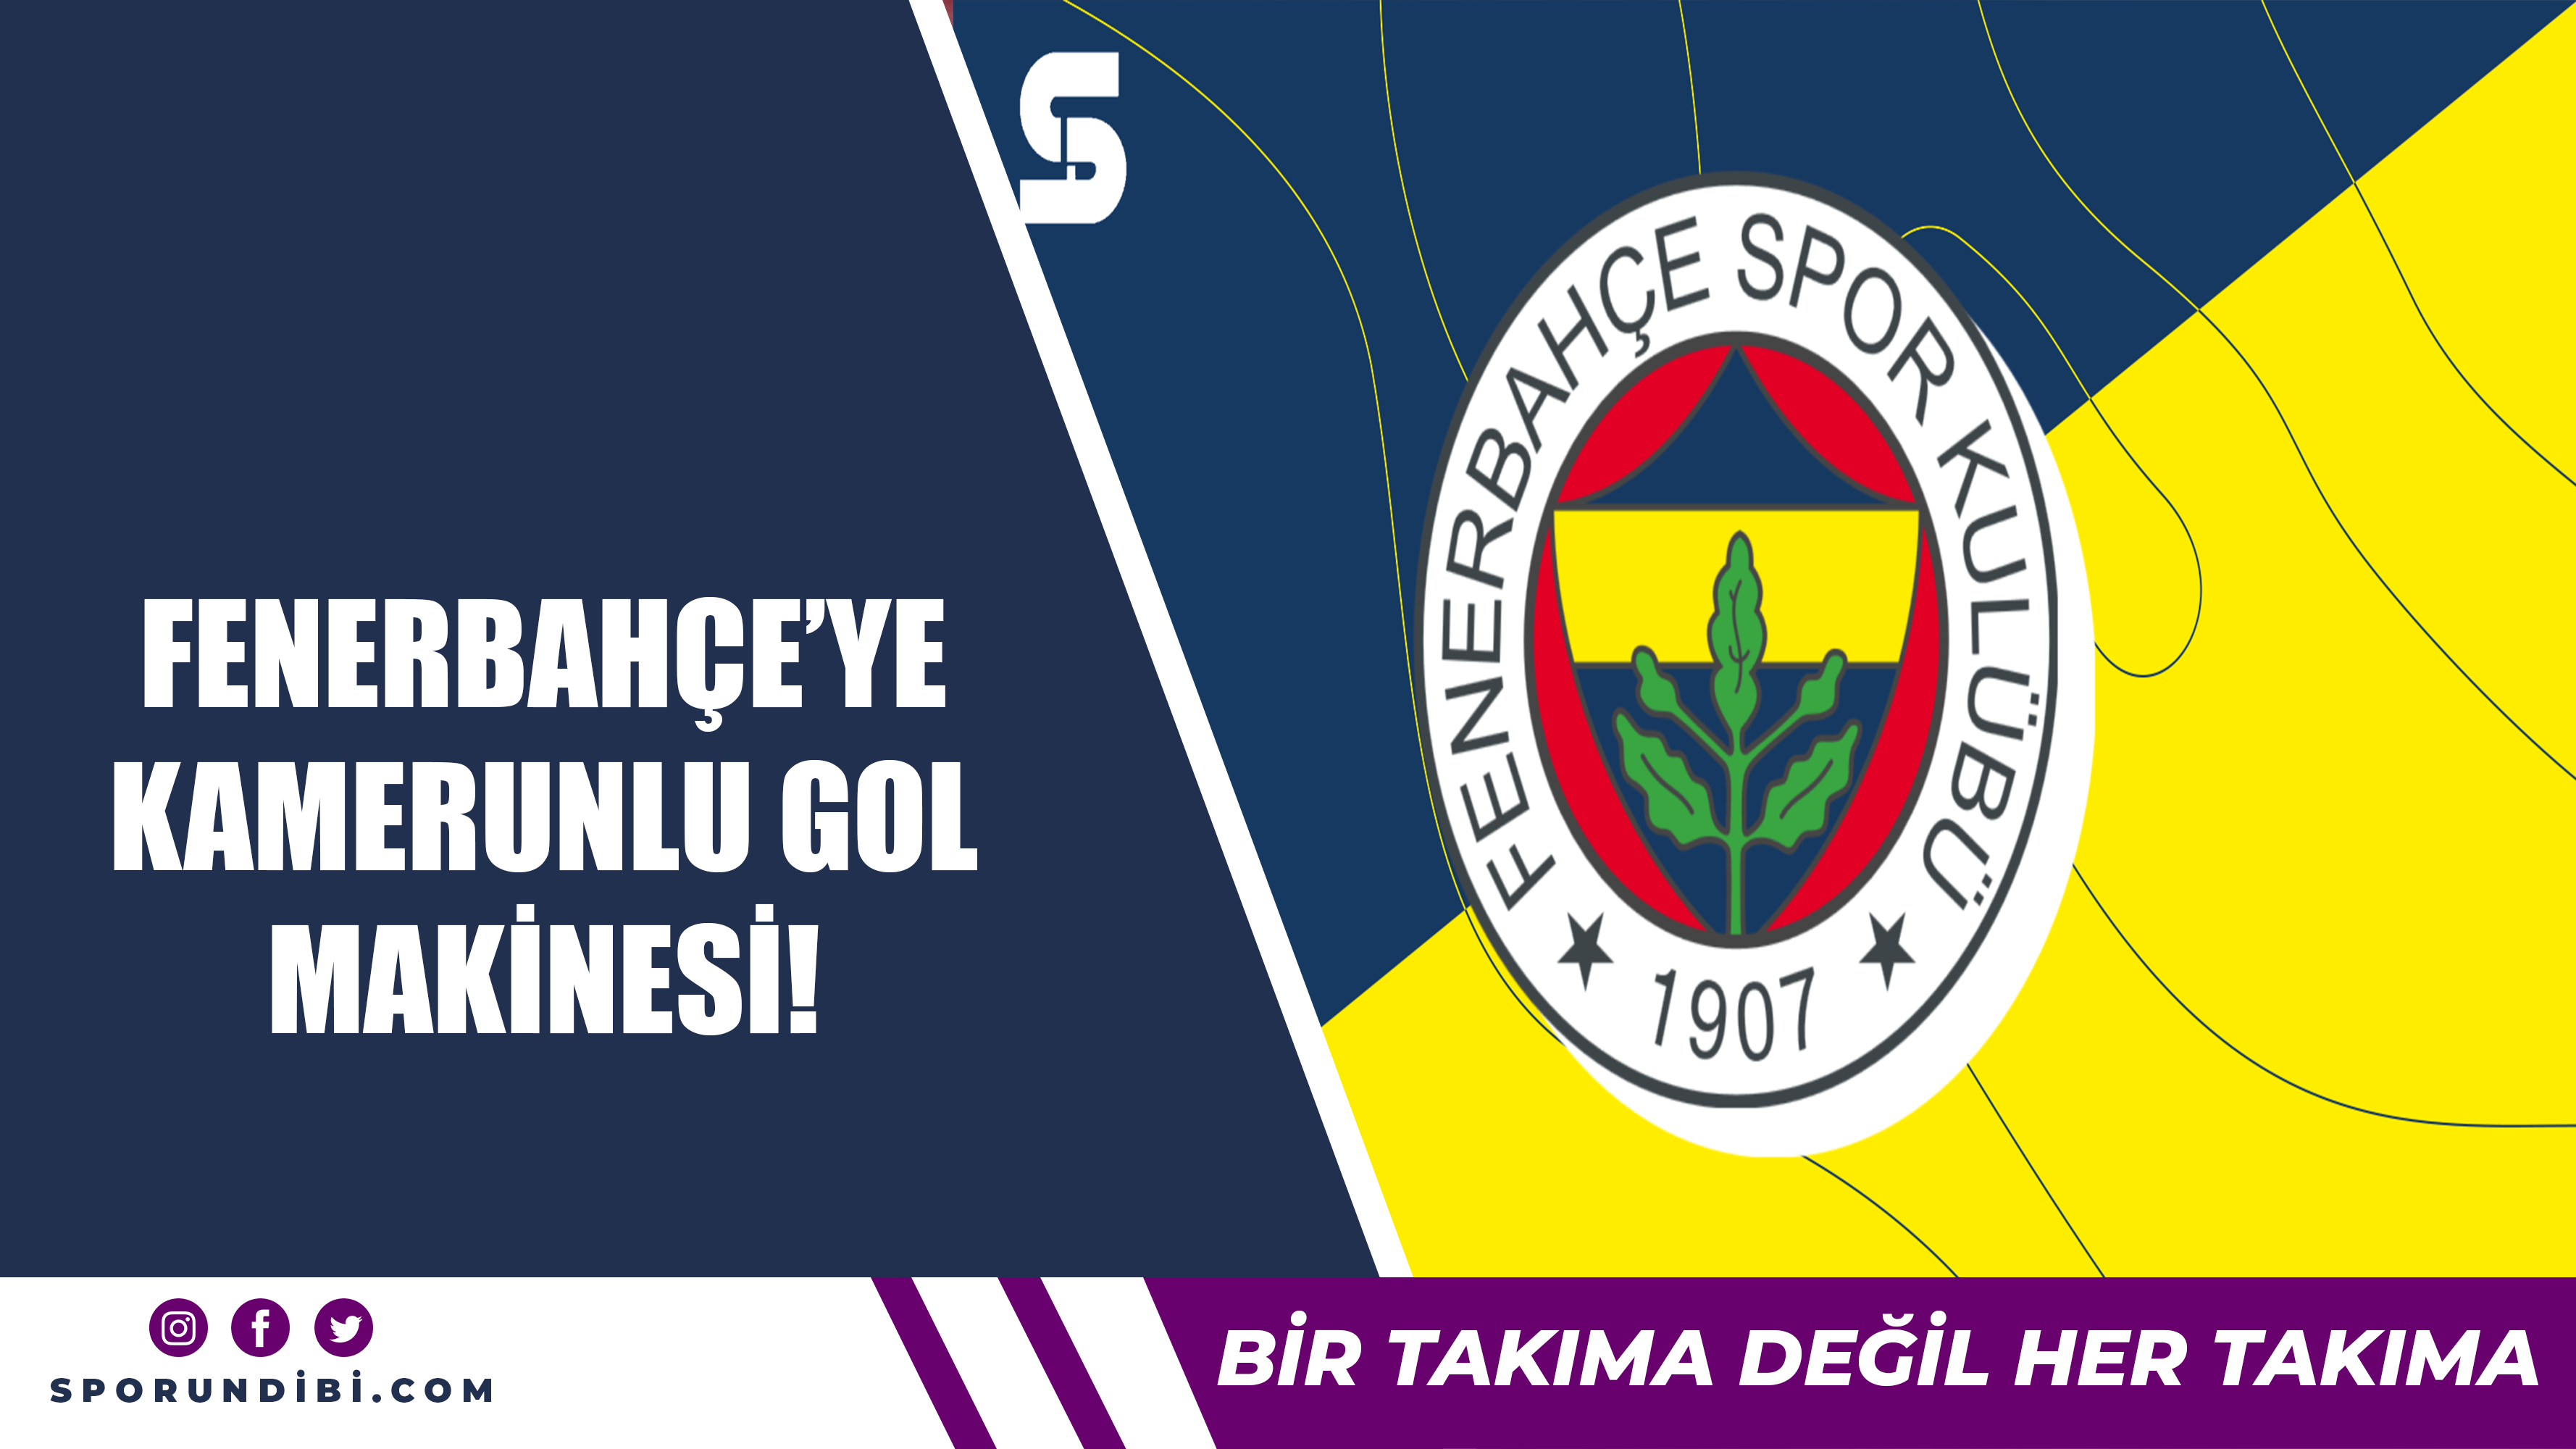 Fenerbahçe'ye Kamerunlu gol makinesi!